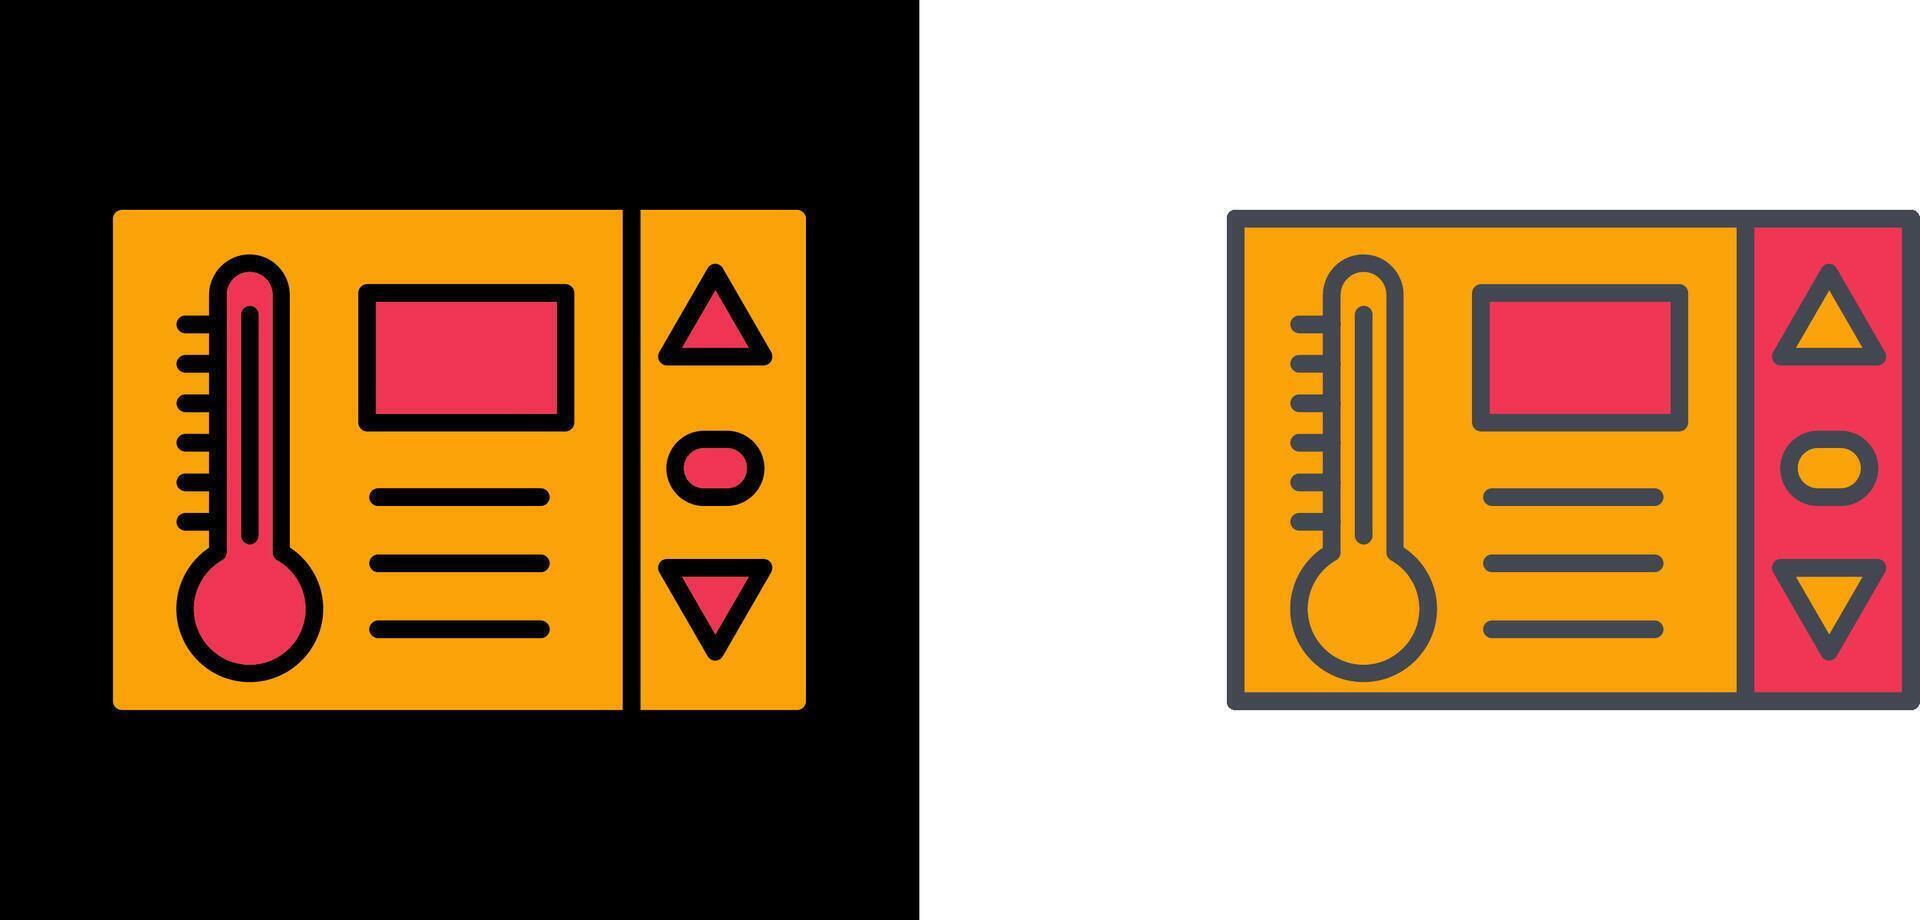 design de ícone do termostato vetor